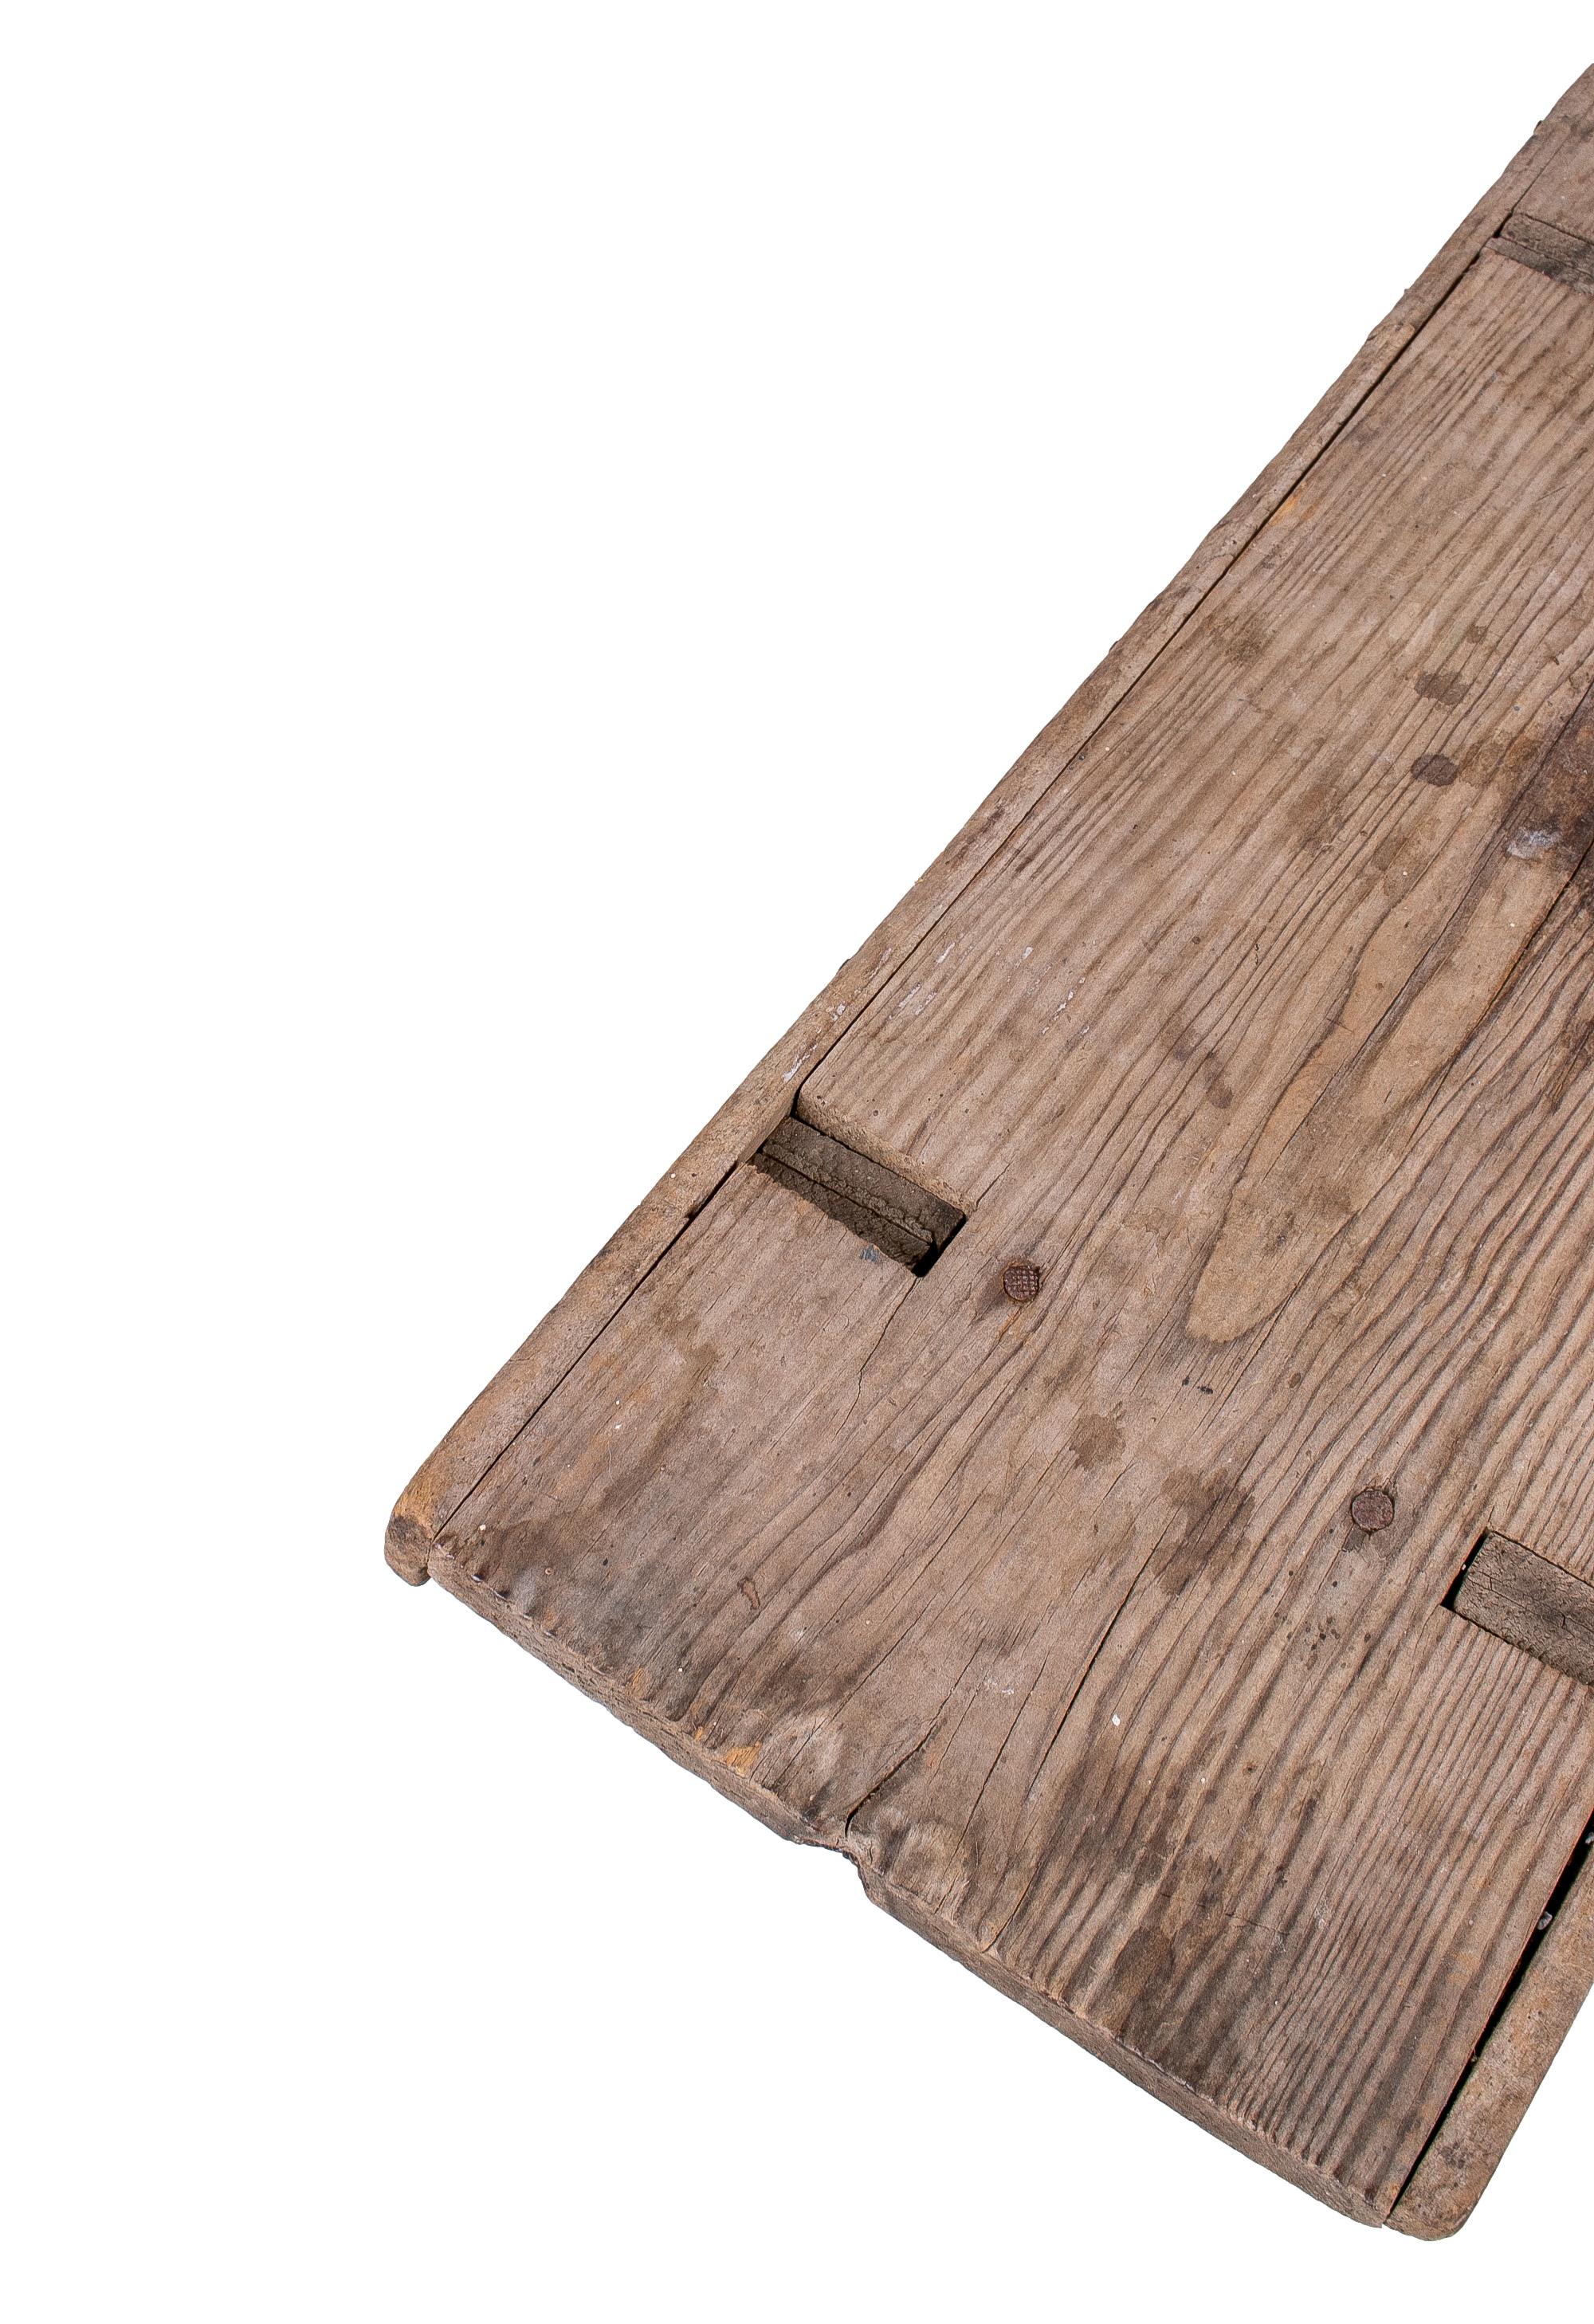 18th Century Spanish Handmade Wooden Bench 1